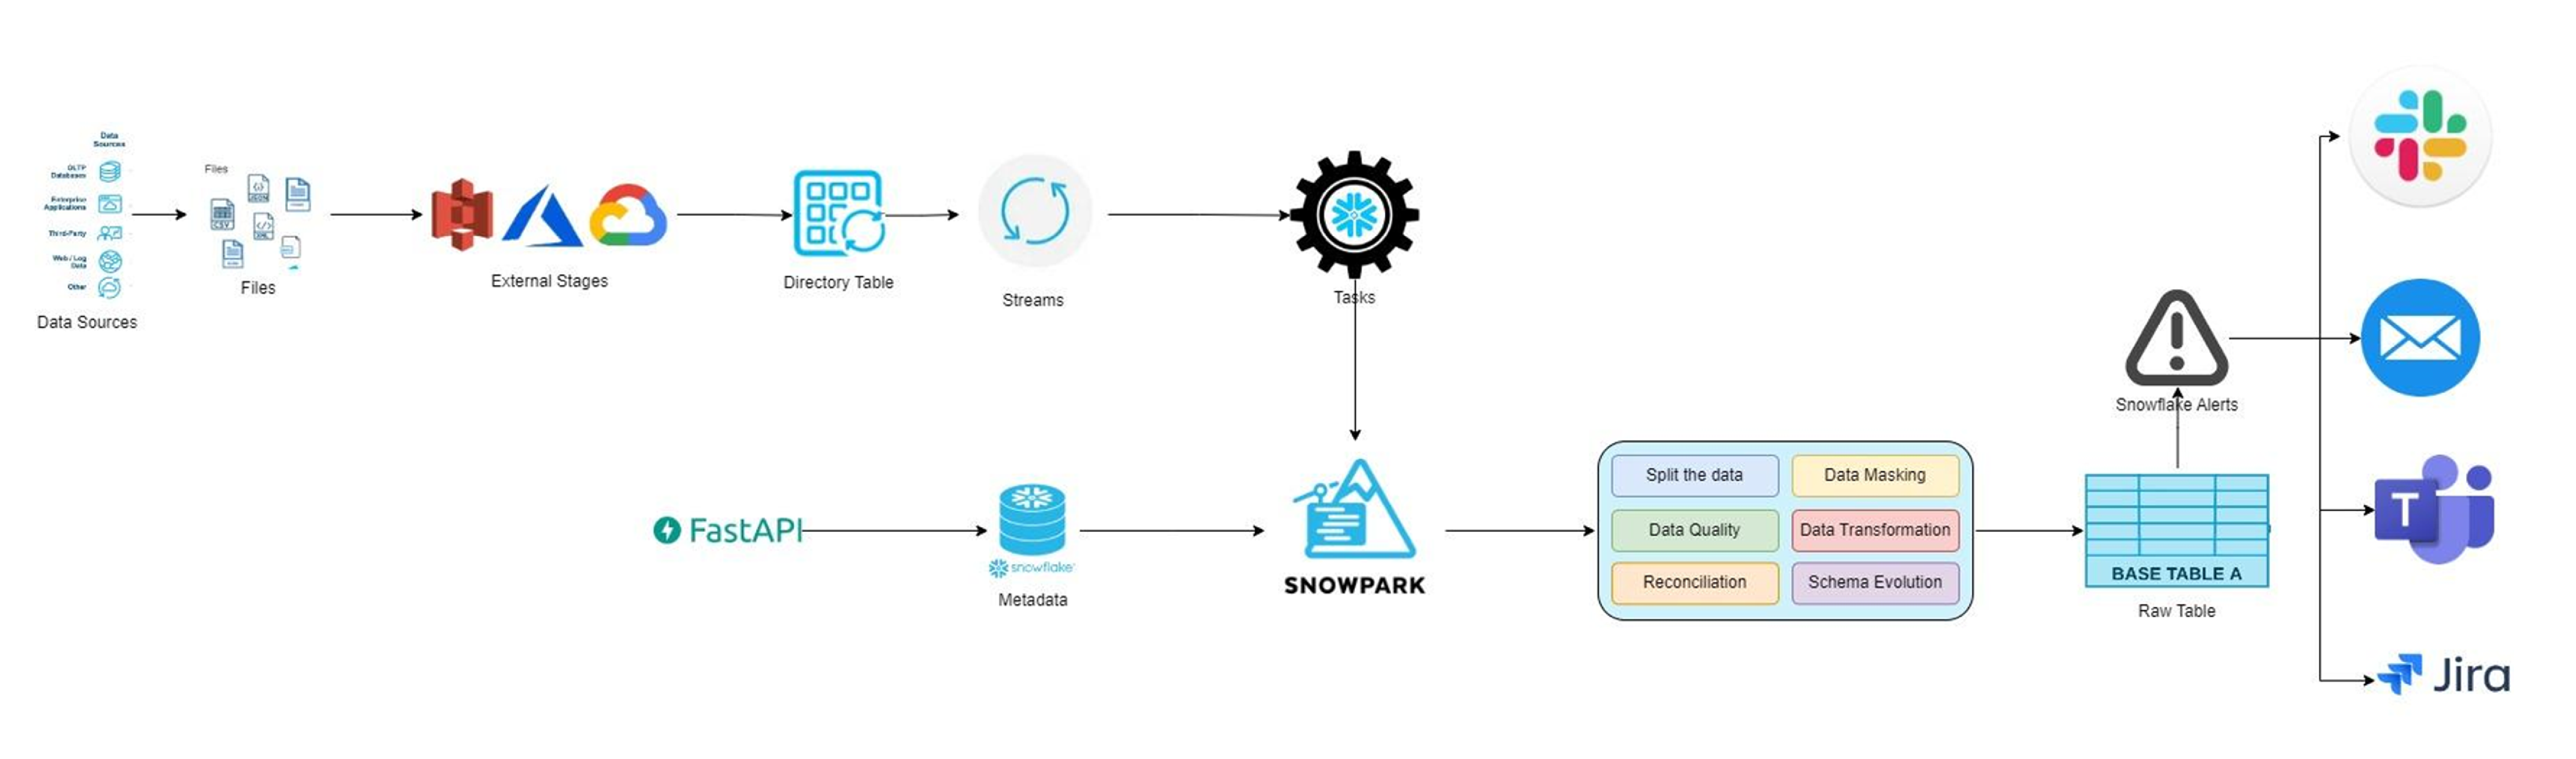 Snowpark based framework